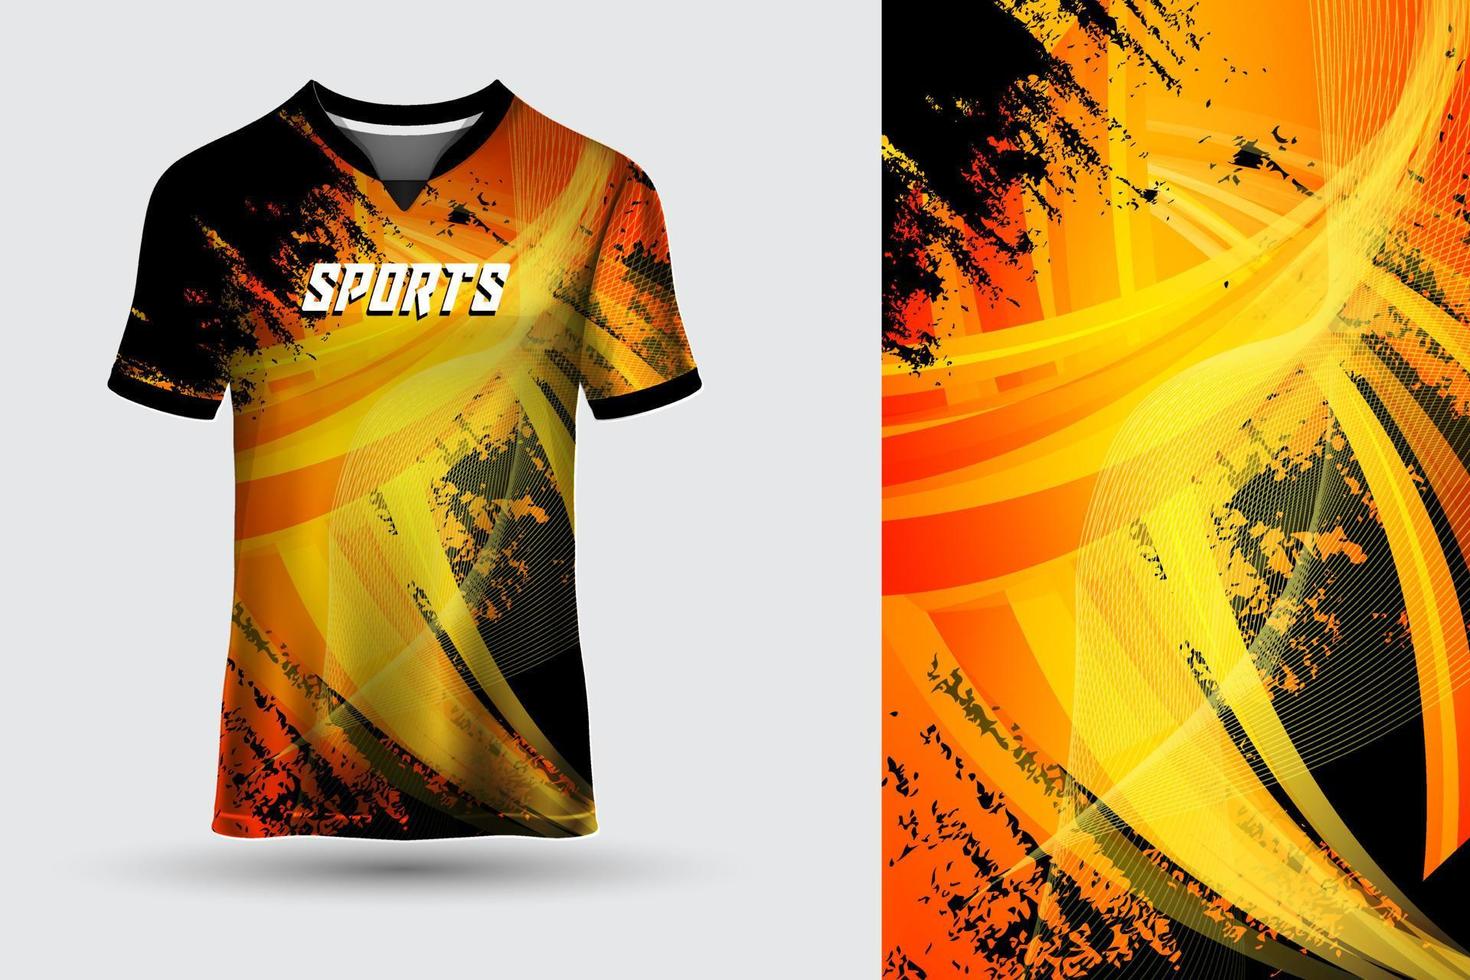 extraordinära t-shirts i designtröja med sporttröja med vektor framifrån och bakifrån